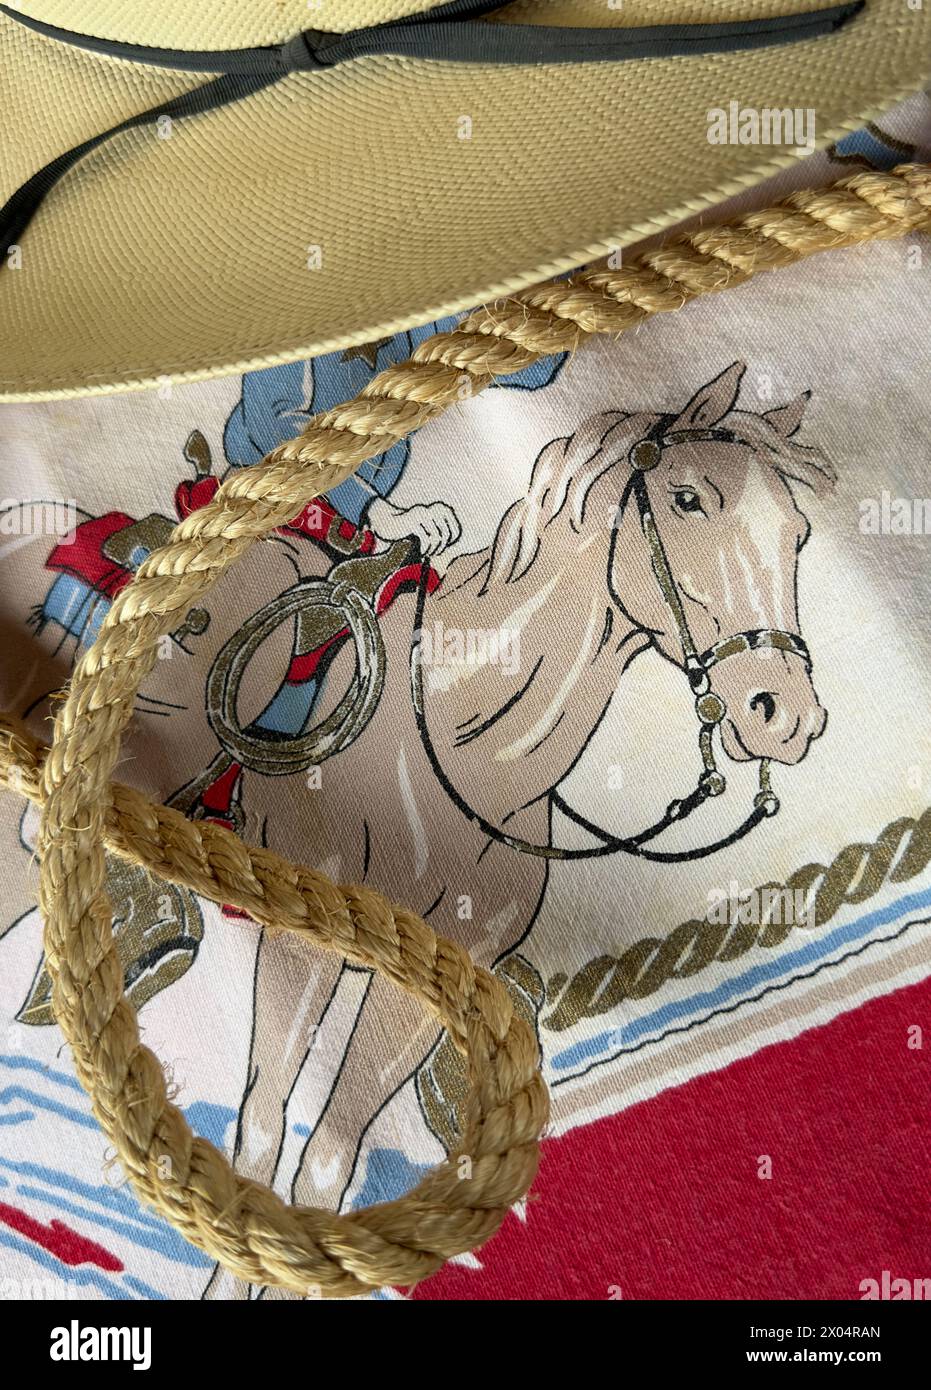 L'immagine di un cavallo da cowboy per bambini è circondata da una corda e da un cappello western di paglia. Pony ha redini, cavaliere e sfondo di tessuto. Spazio di testo sul cappello. Foto Stock